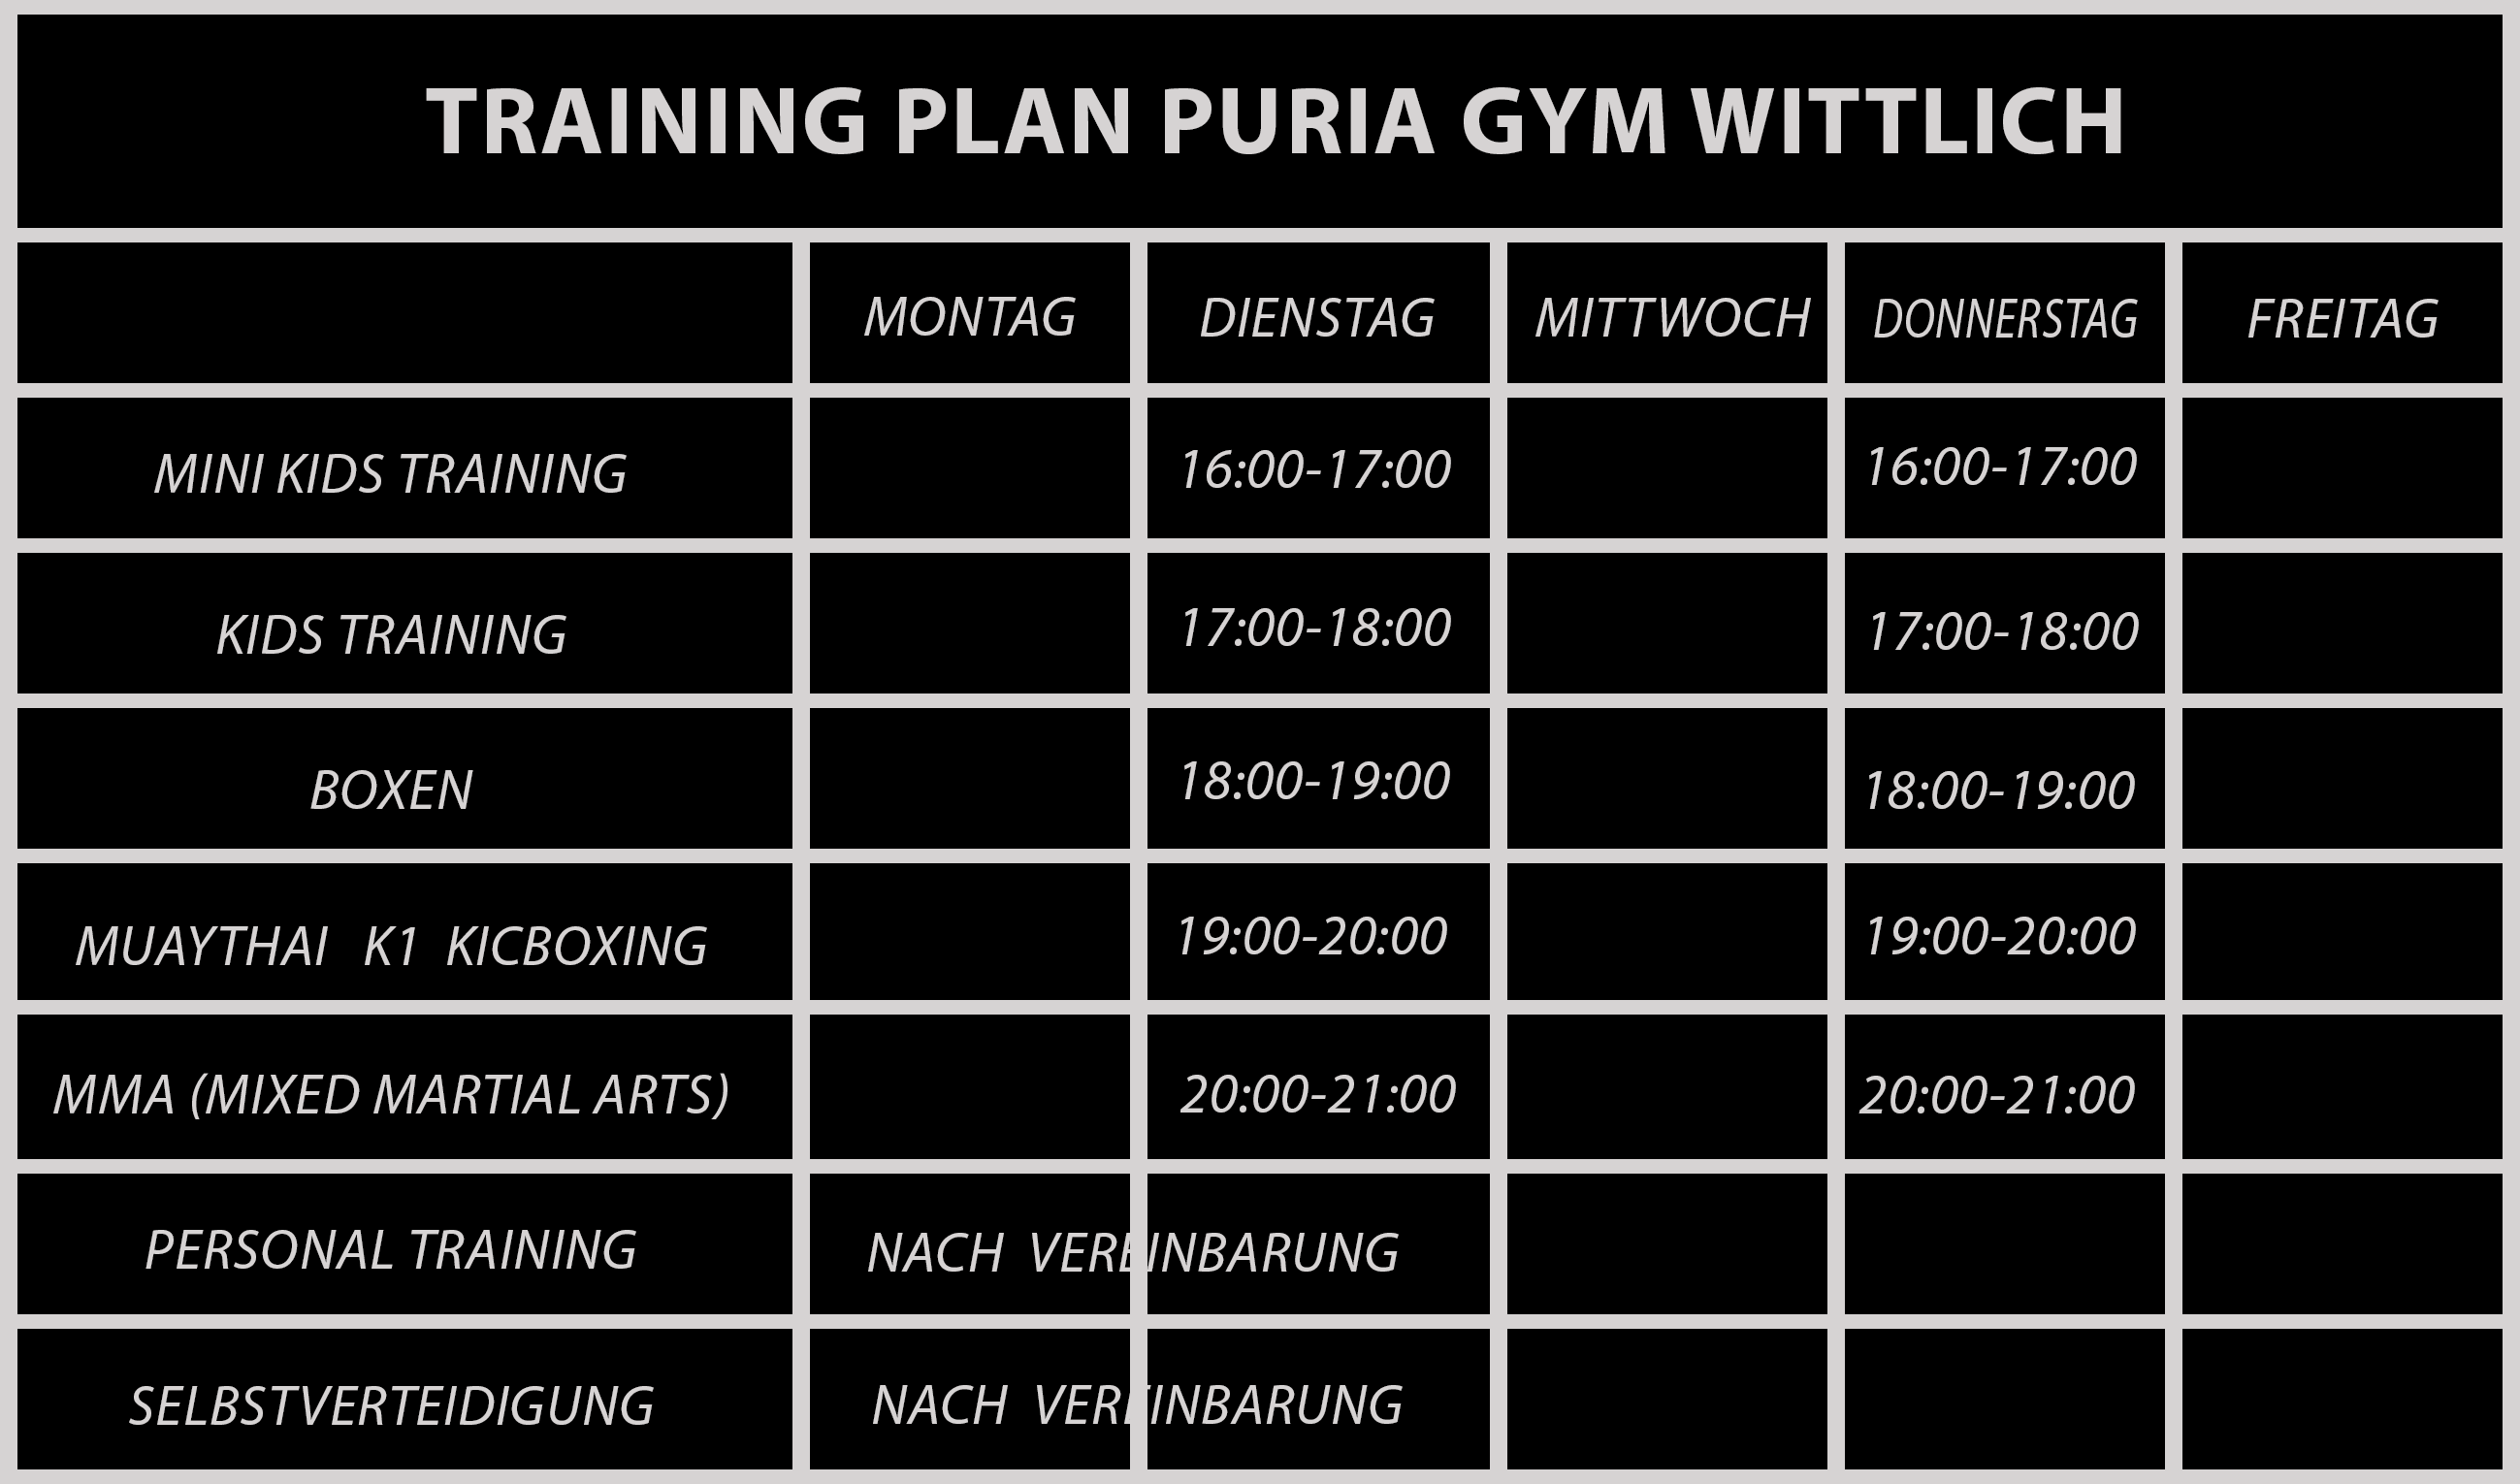 Training Plan Puria Gym Wittlich Jan.2022